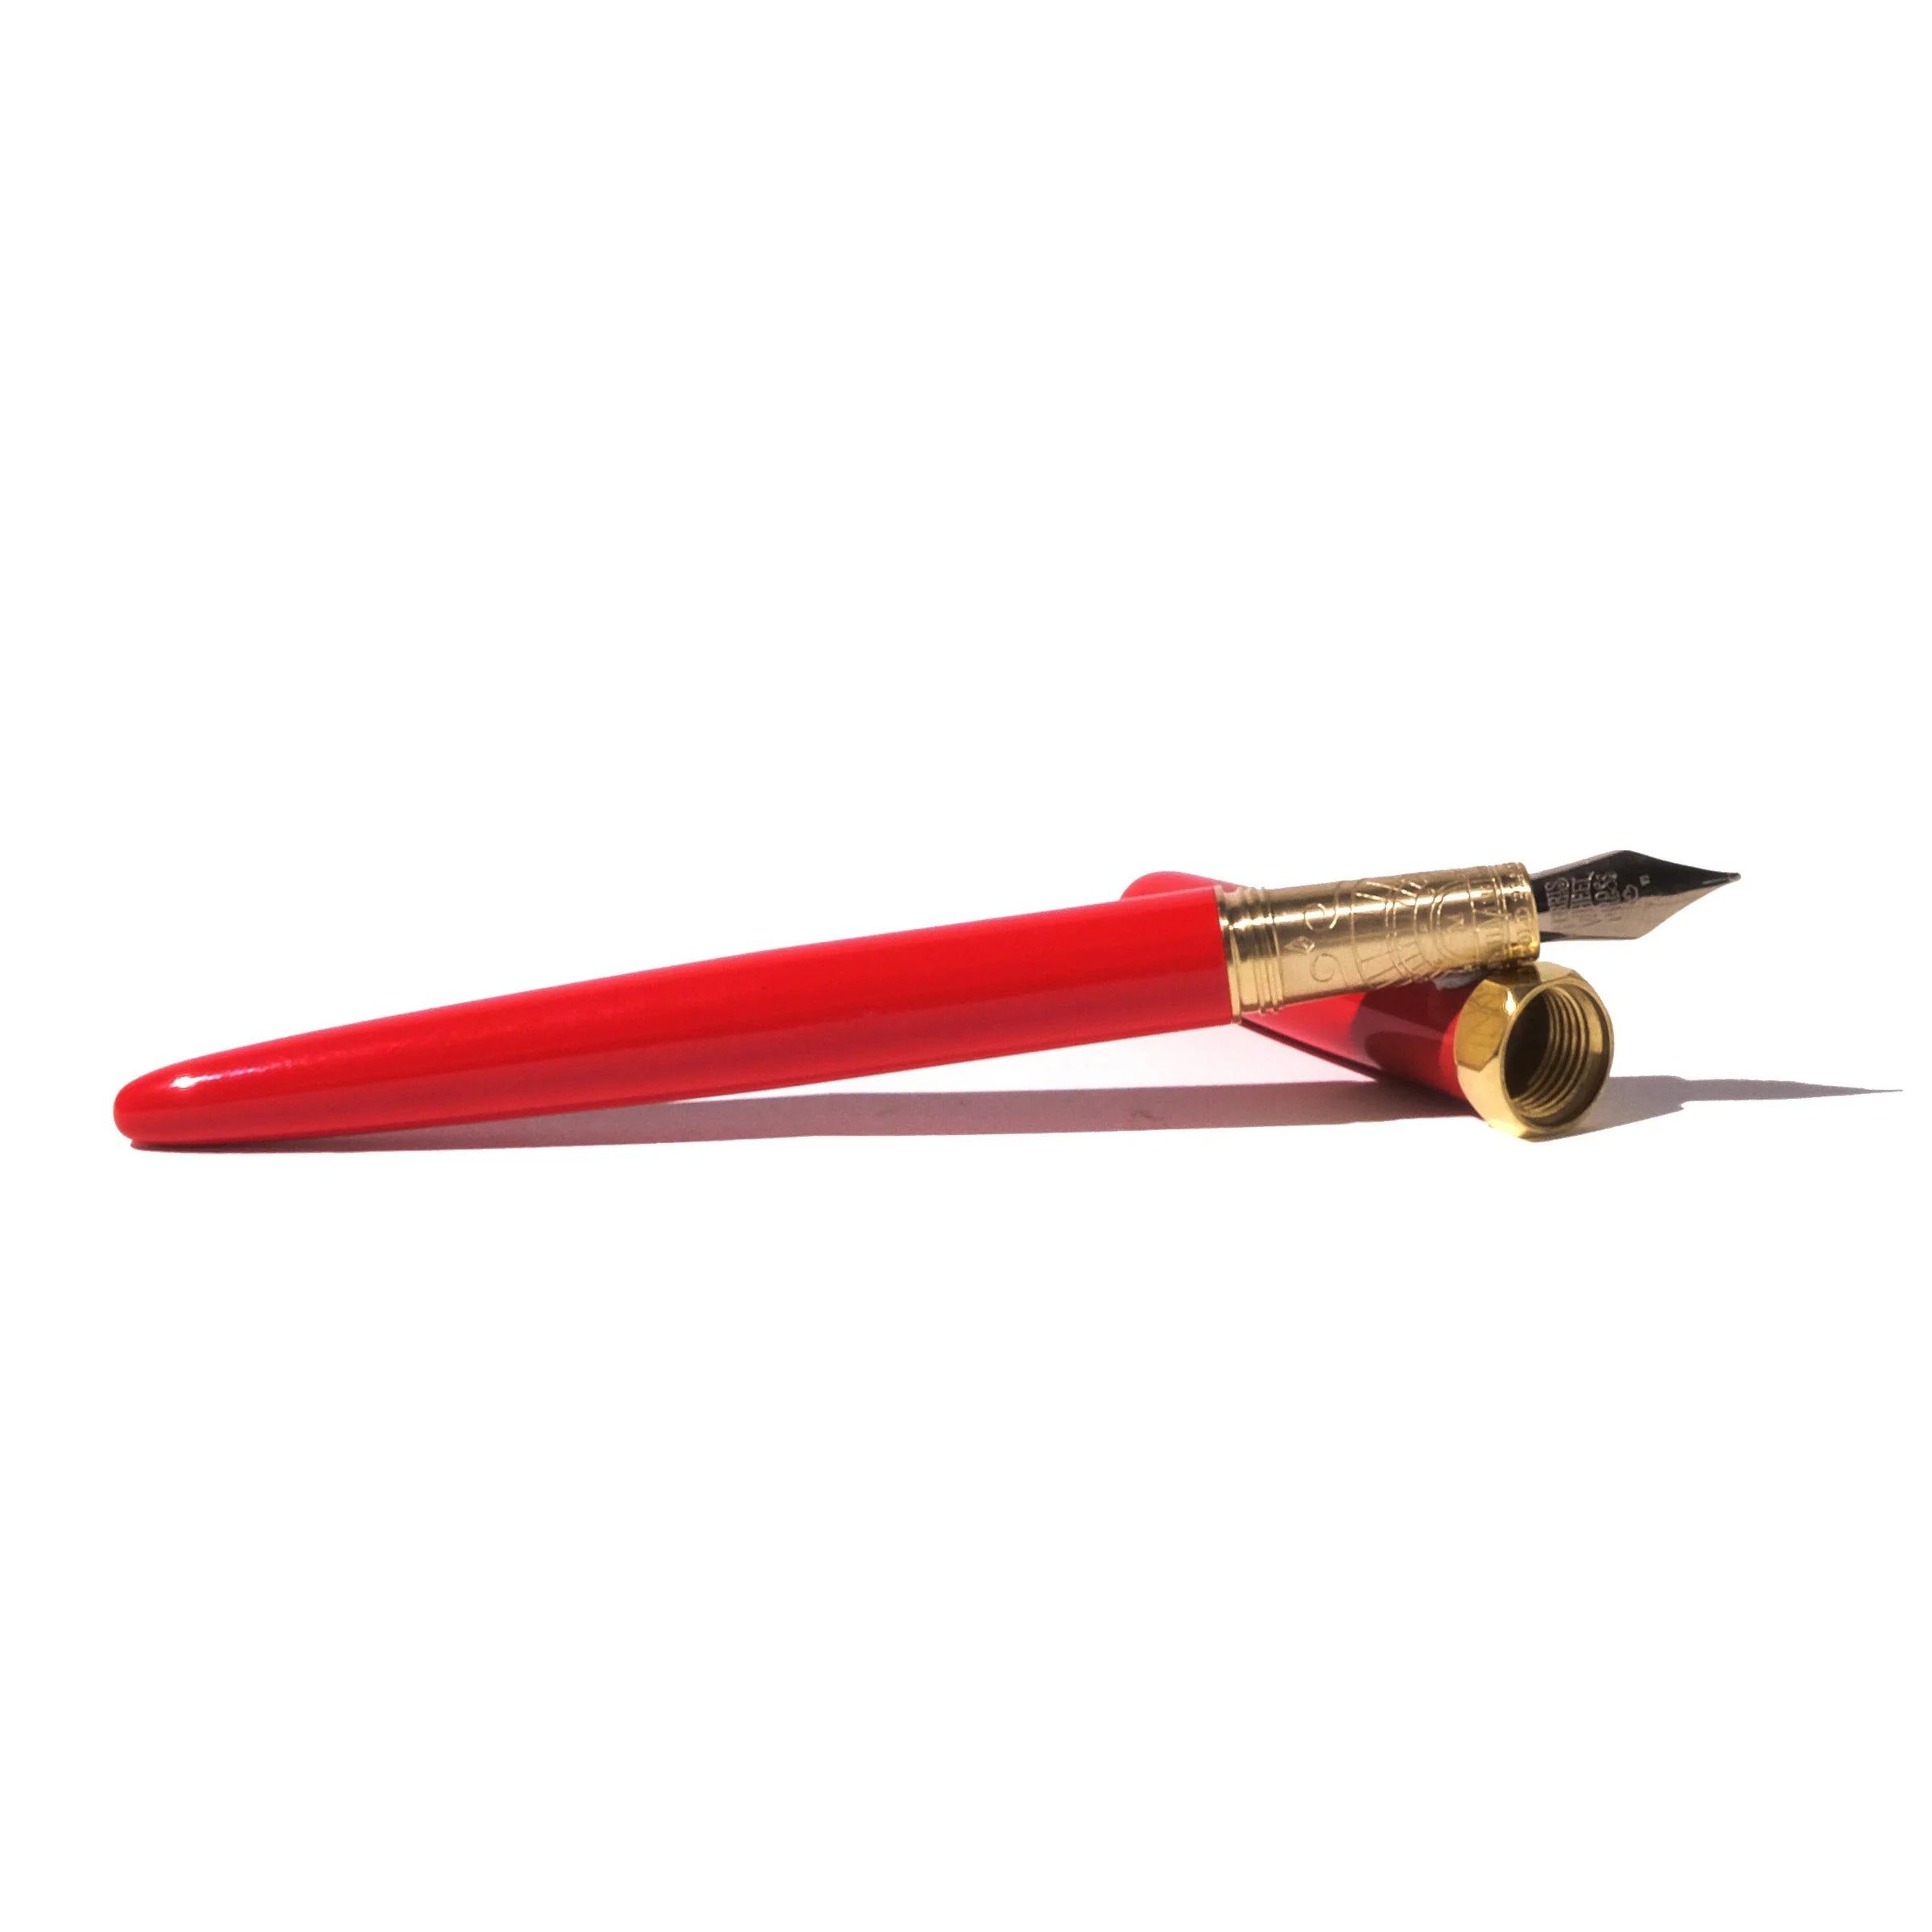 Brush Fountain Pen | Red Carpet